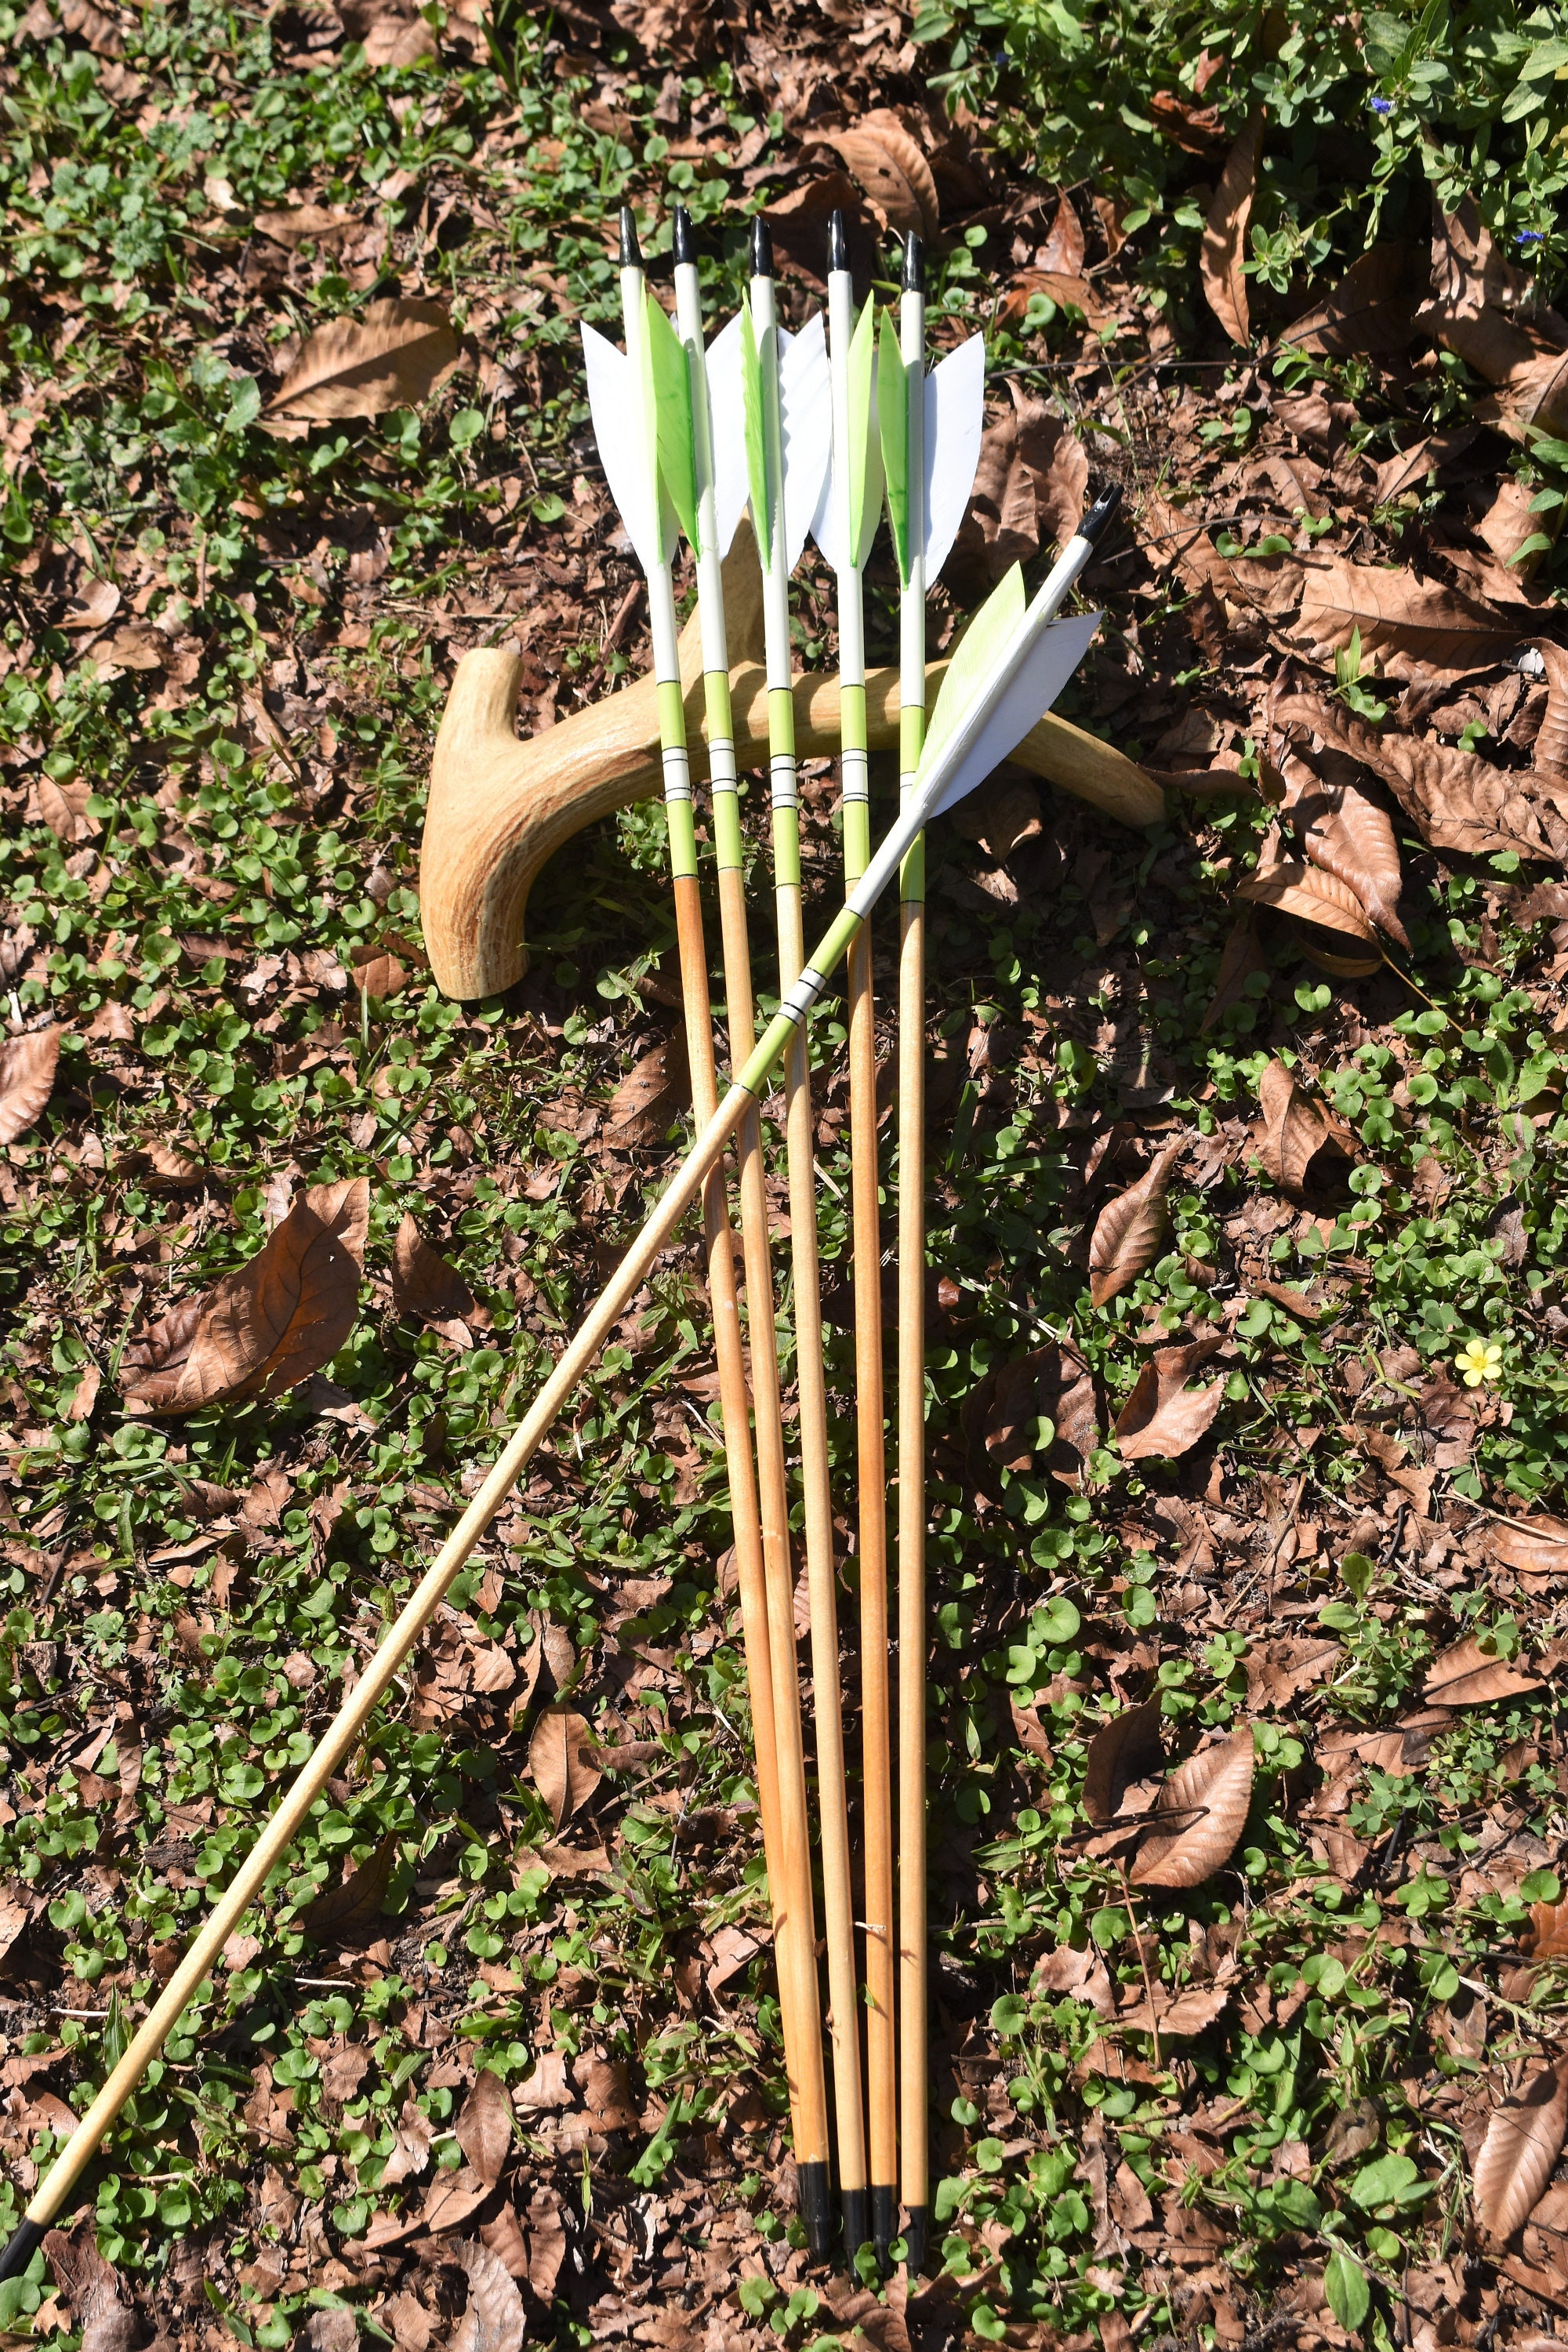 Archery arrows Port orford cedar arrows Bright lime green | Etsy